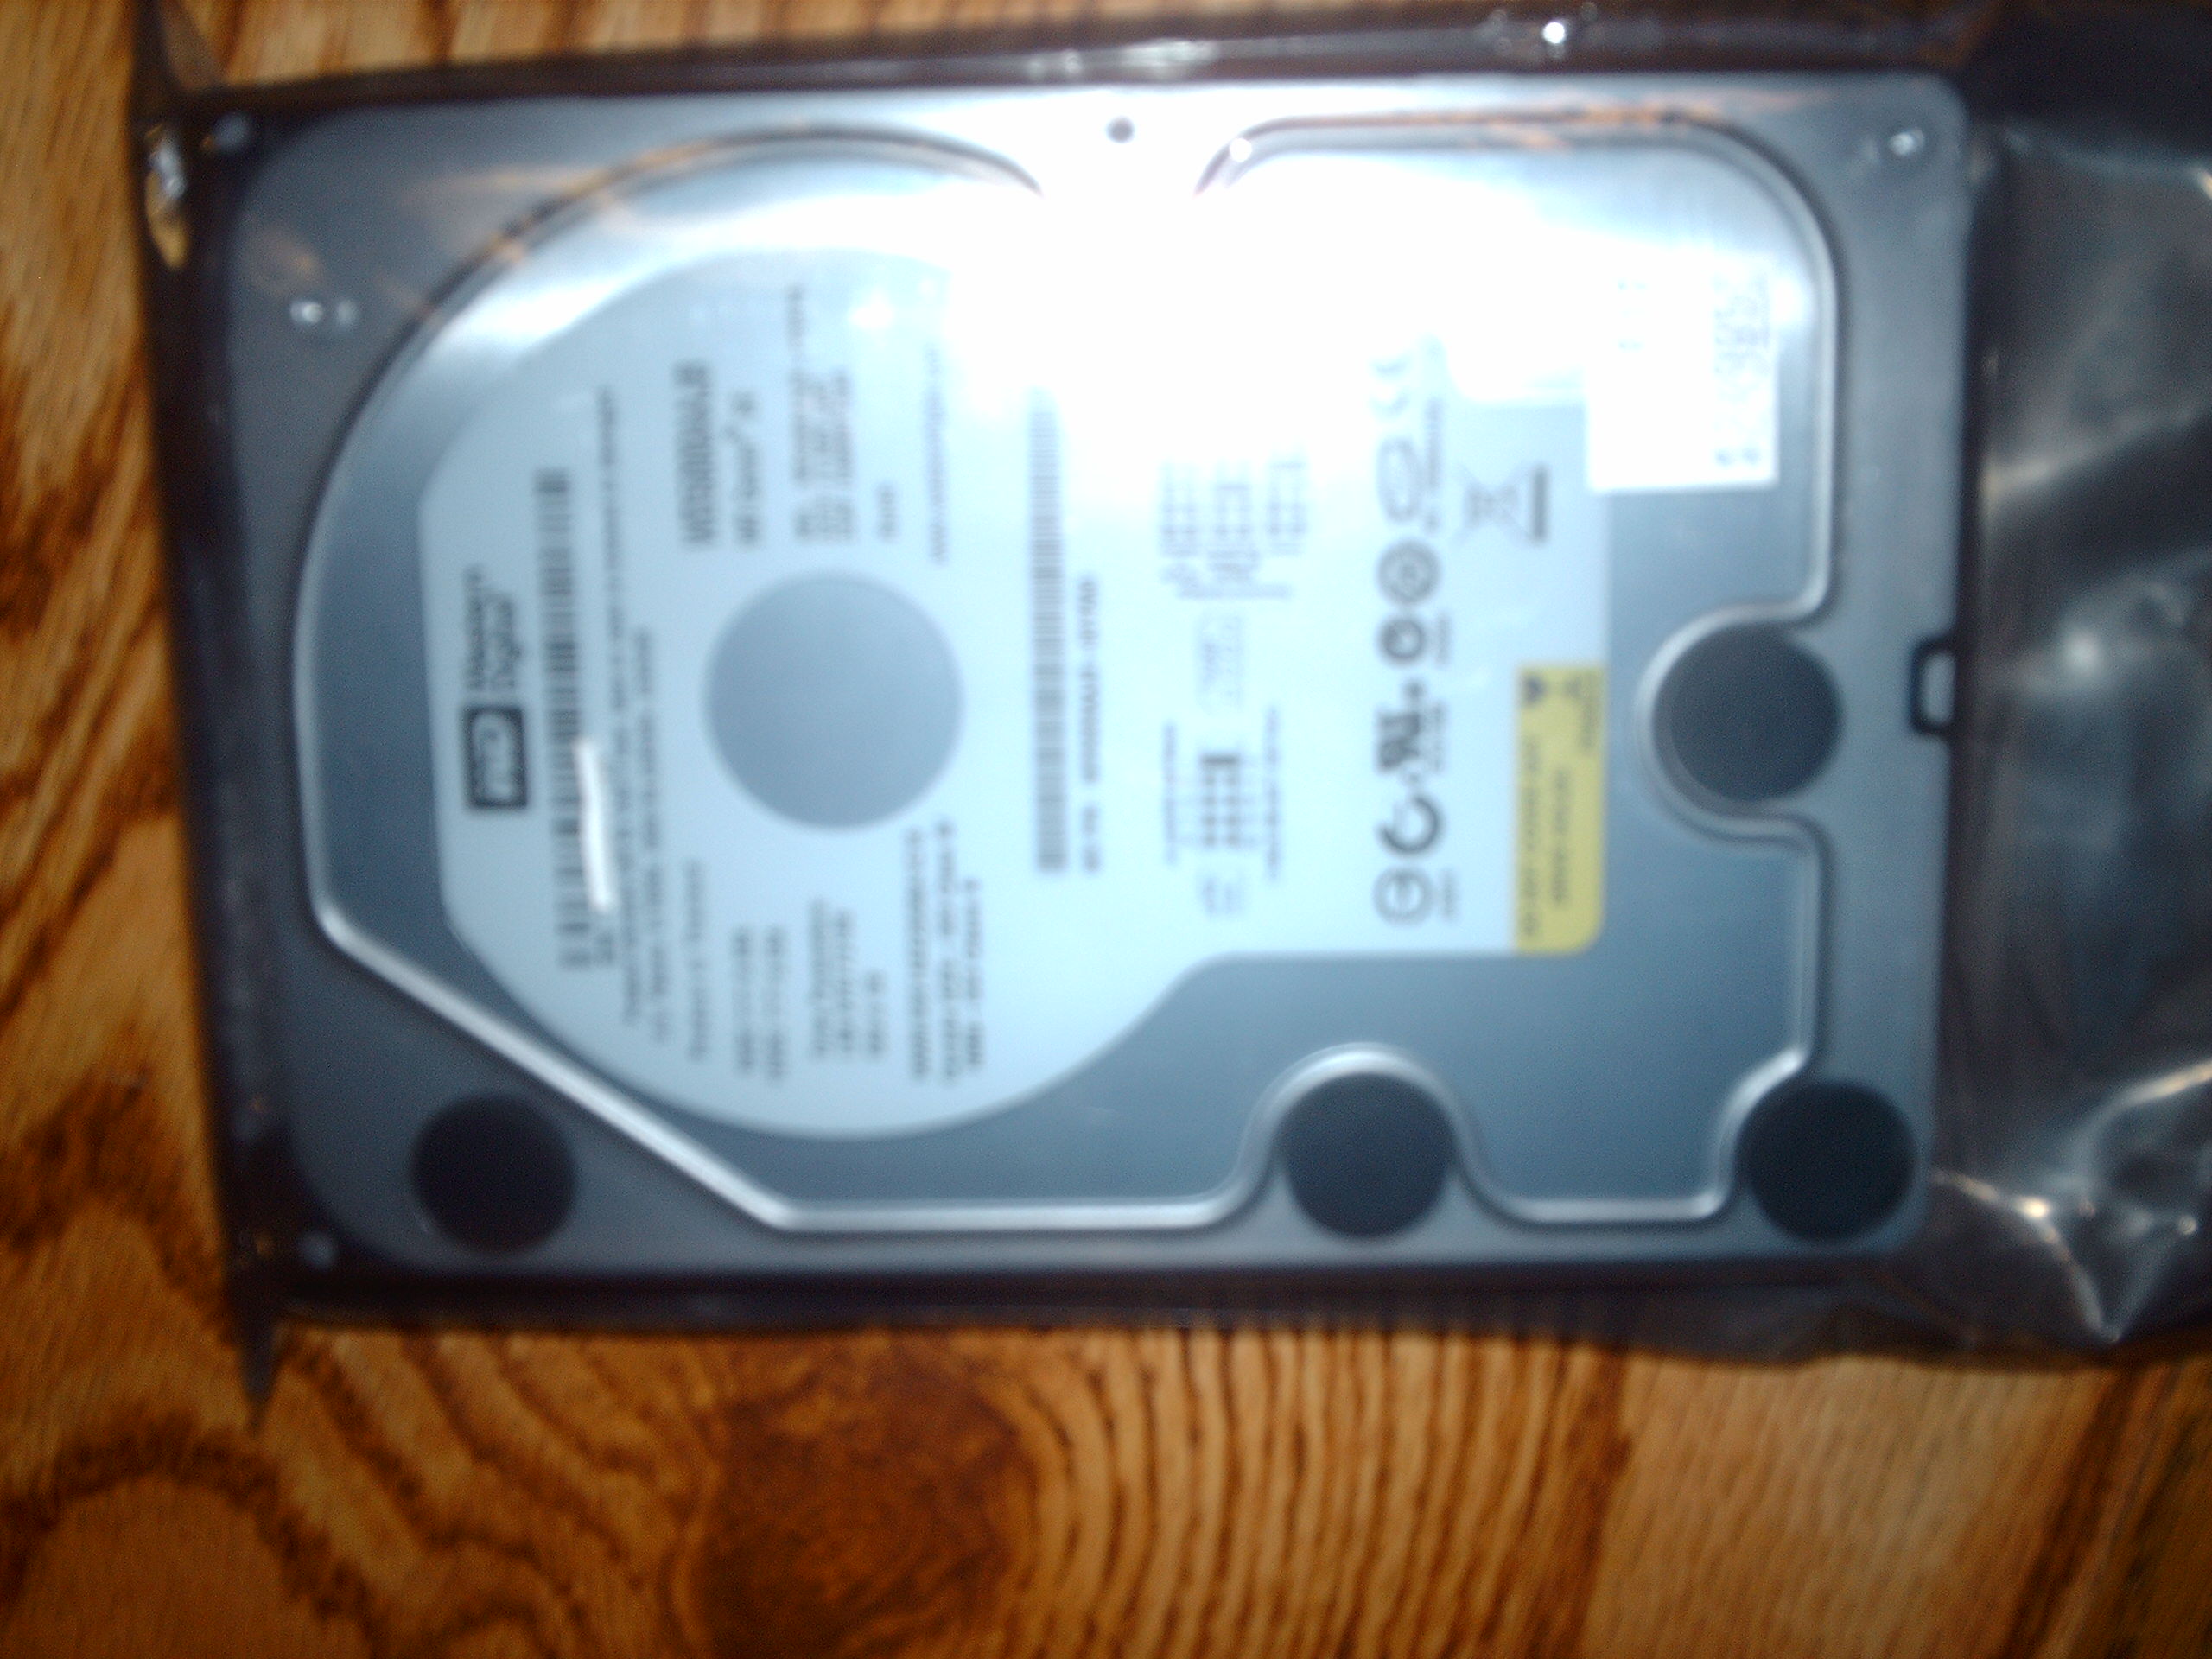 NEW Western Digital 500GB PATA Hard Drive, 7200 RPM